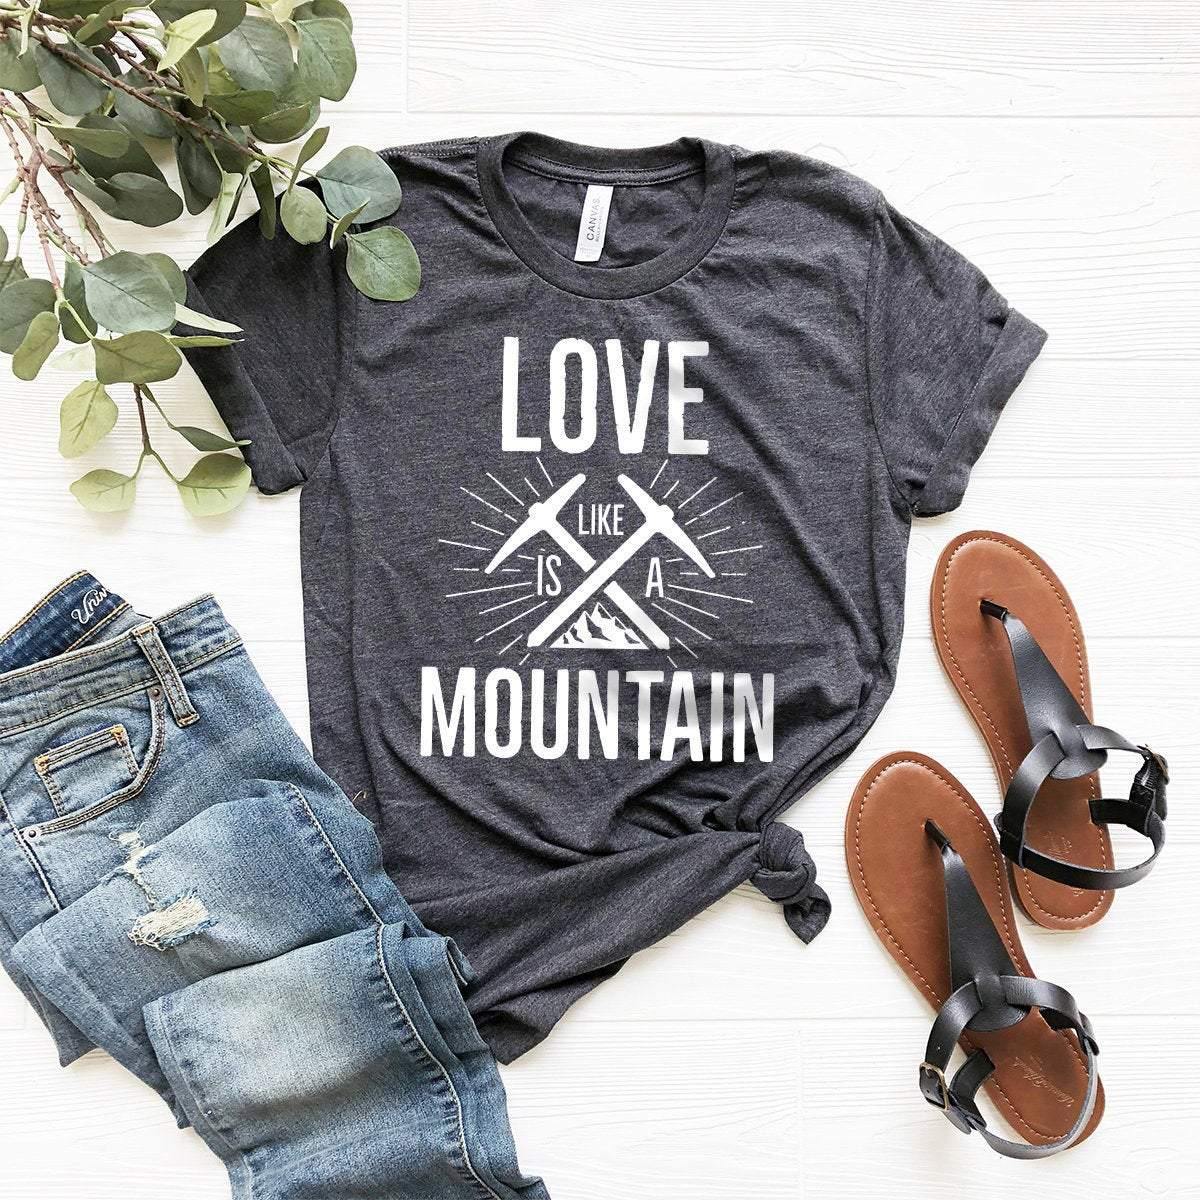 Mountain Lover T-Shirt, Hiking Shirt, Climbing Shirt, Camper Shirt, Wanderlust Shirt